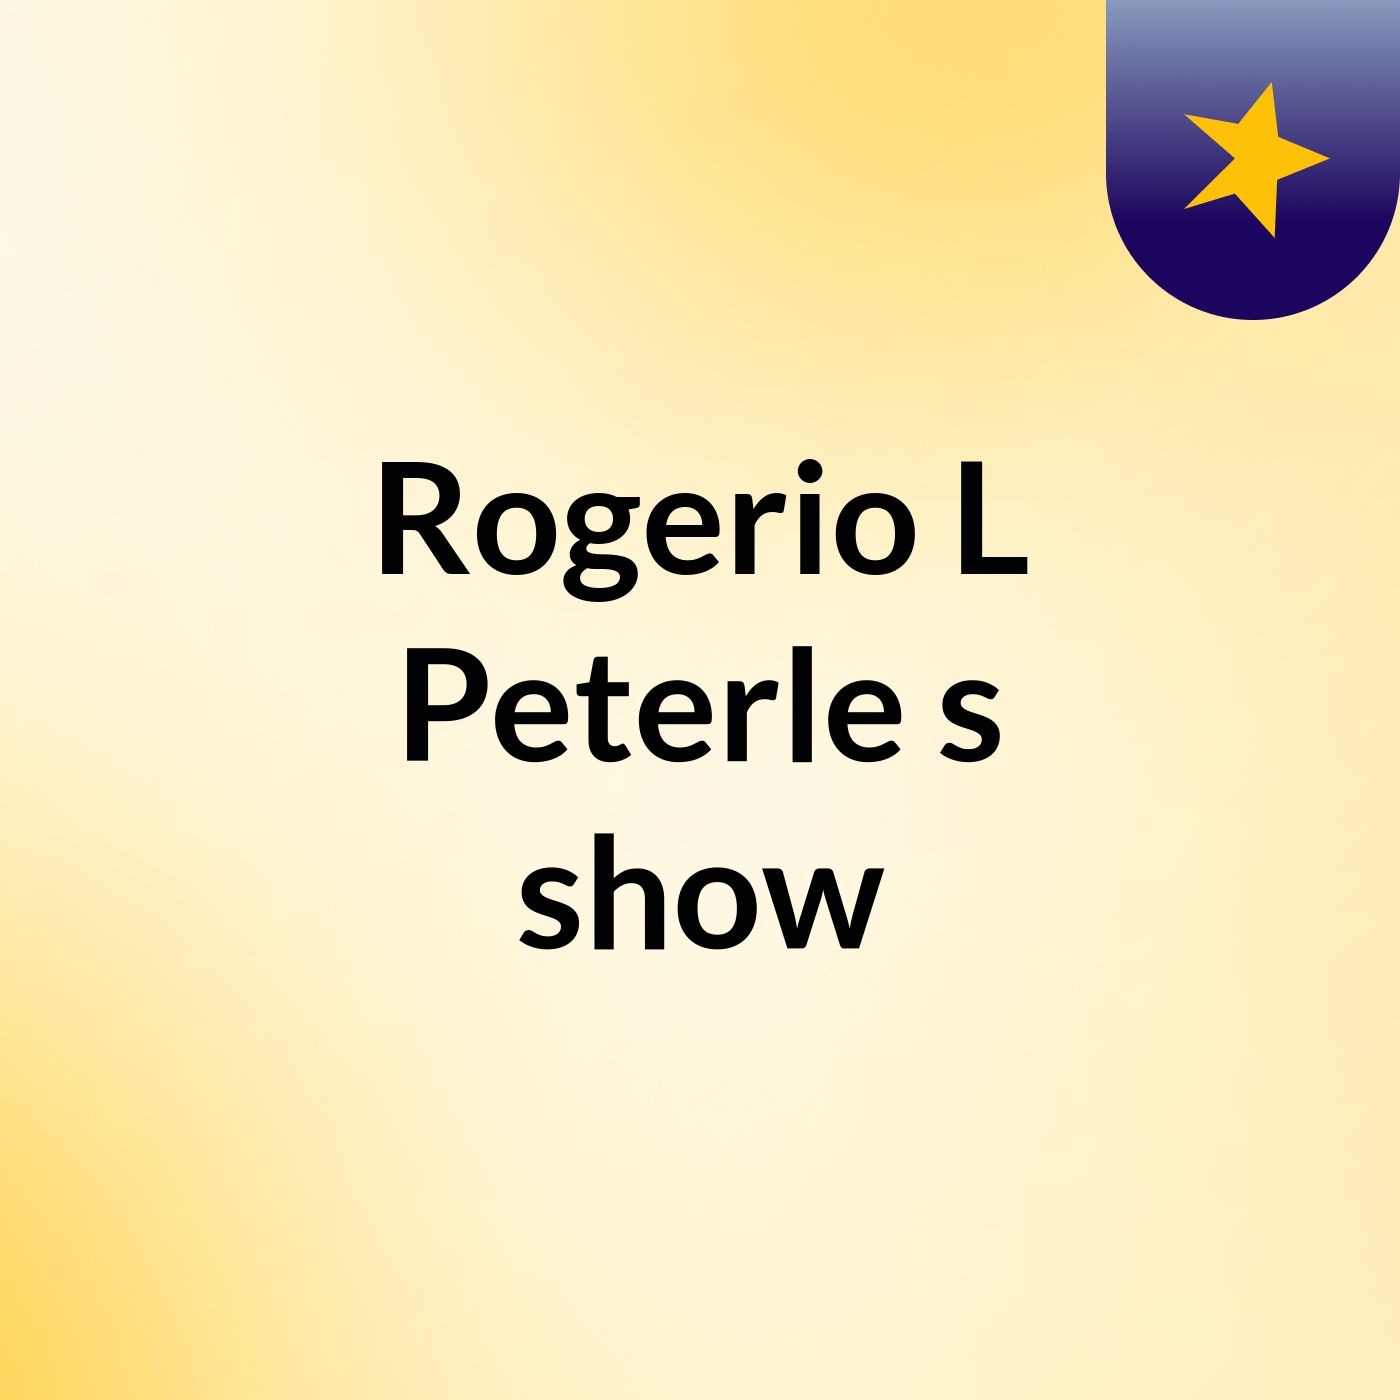 Rogerio L Peterle's show